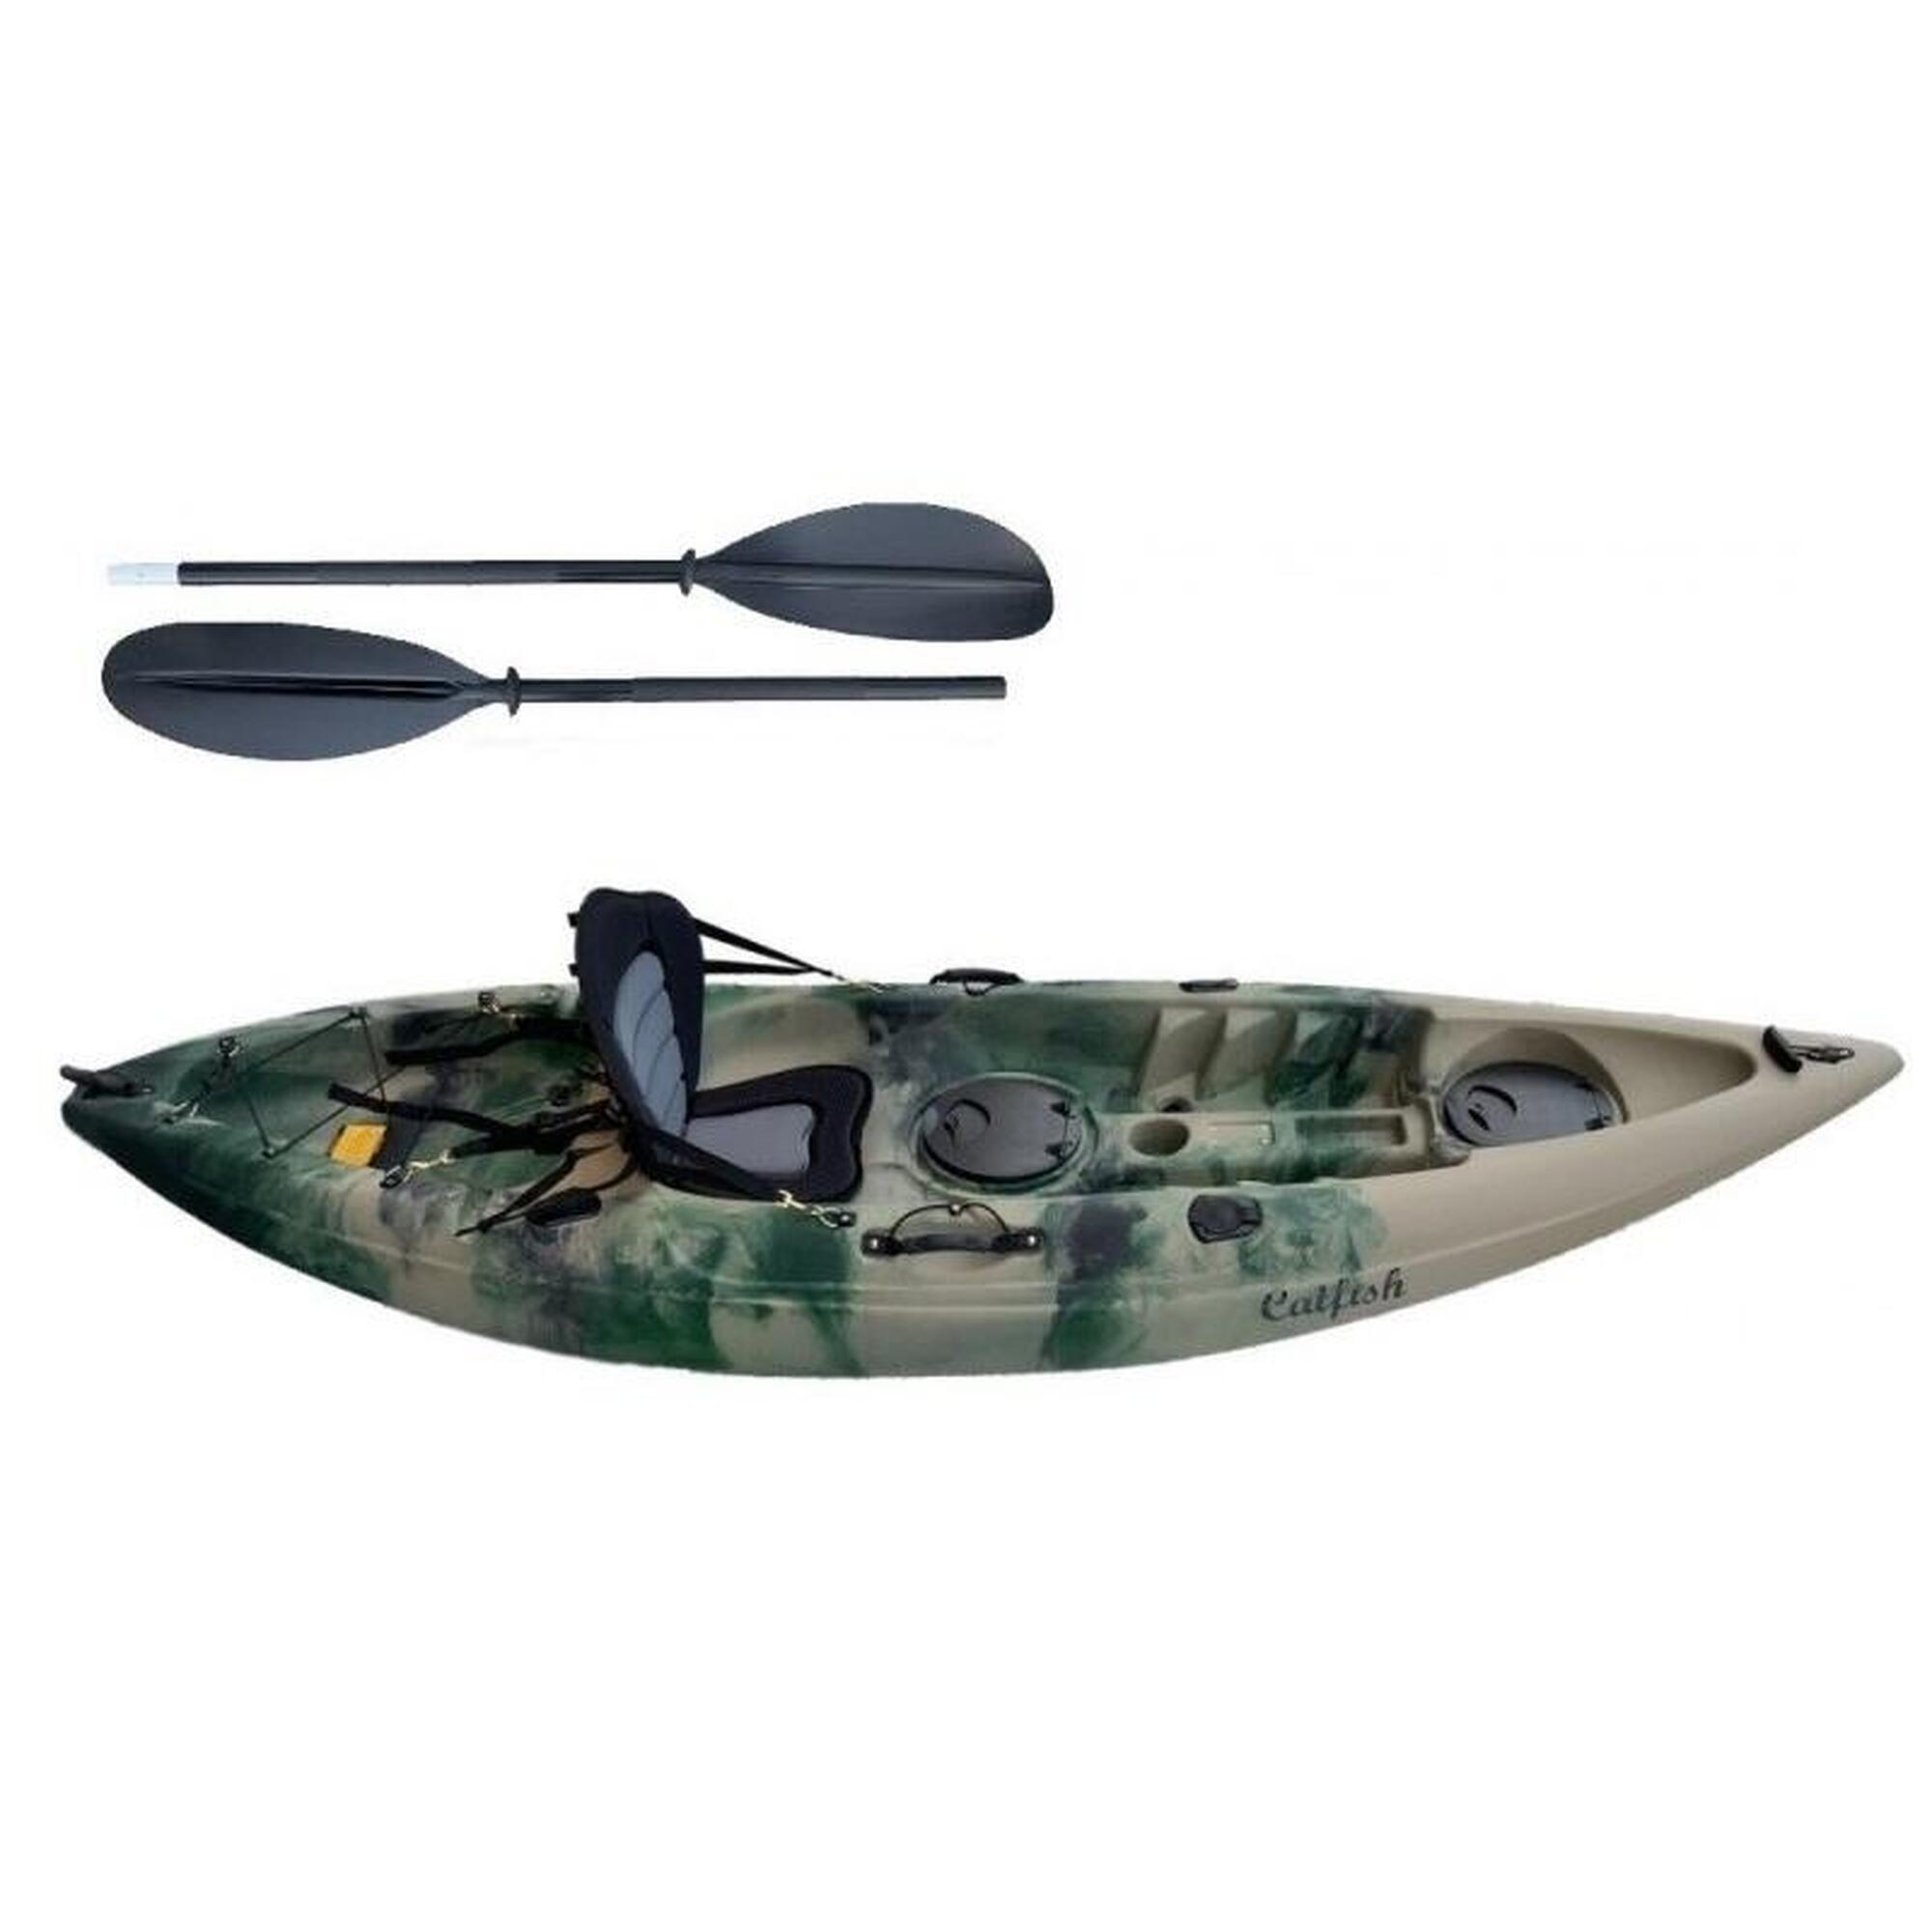 Jednoosobowy kajak wędkarski Scorpio kayak Catfish + wiosło